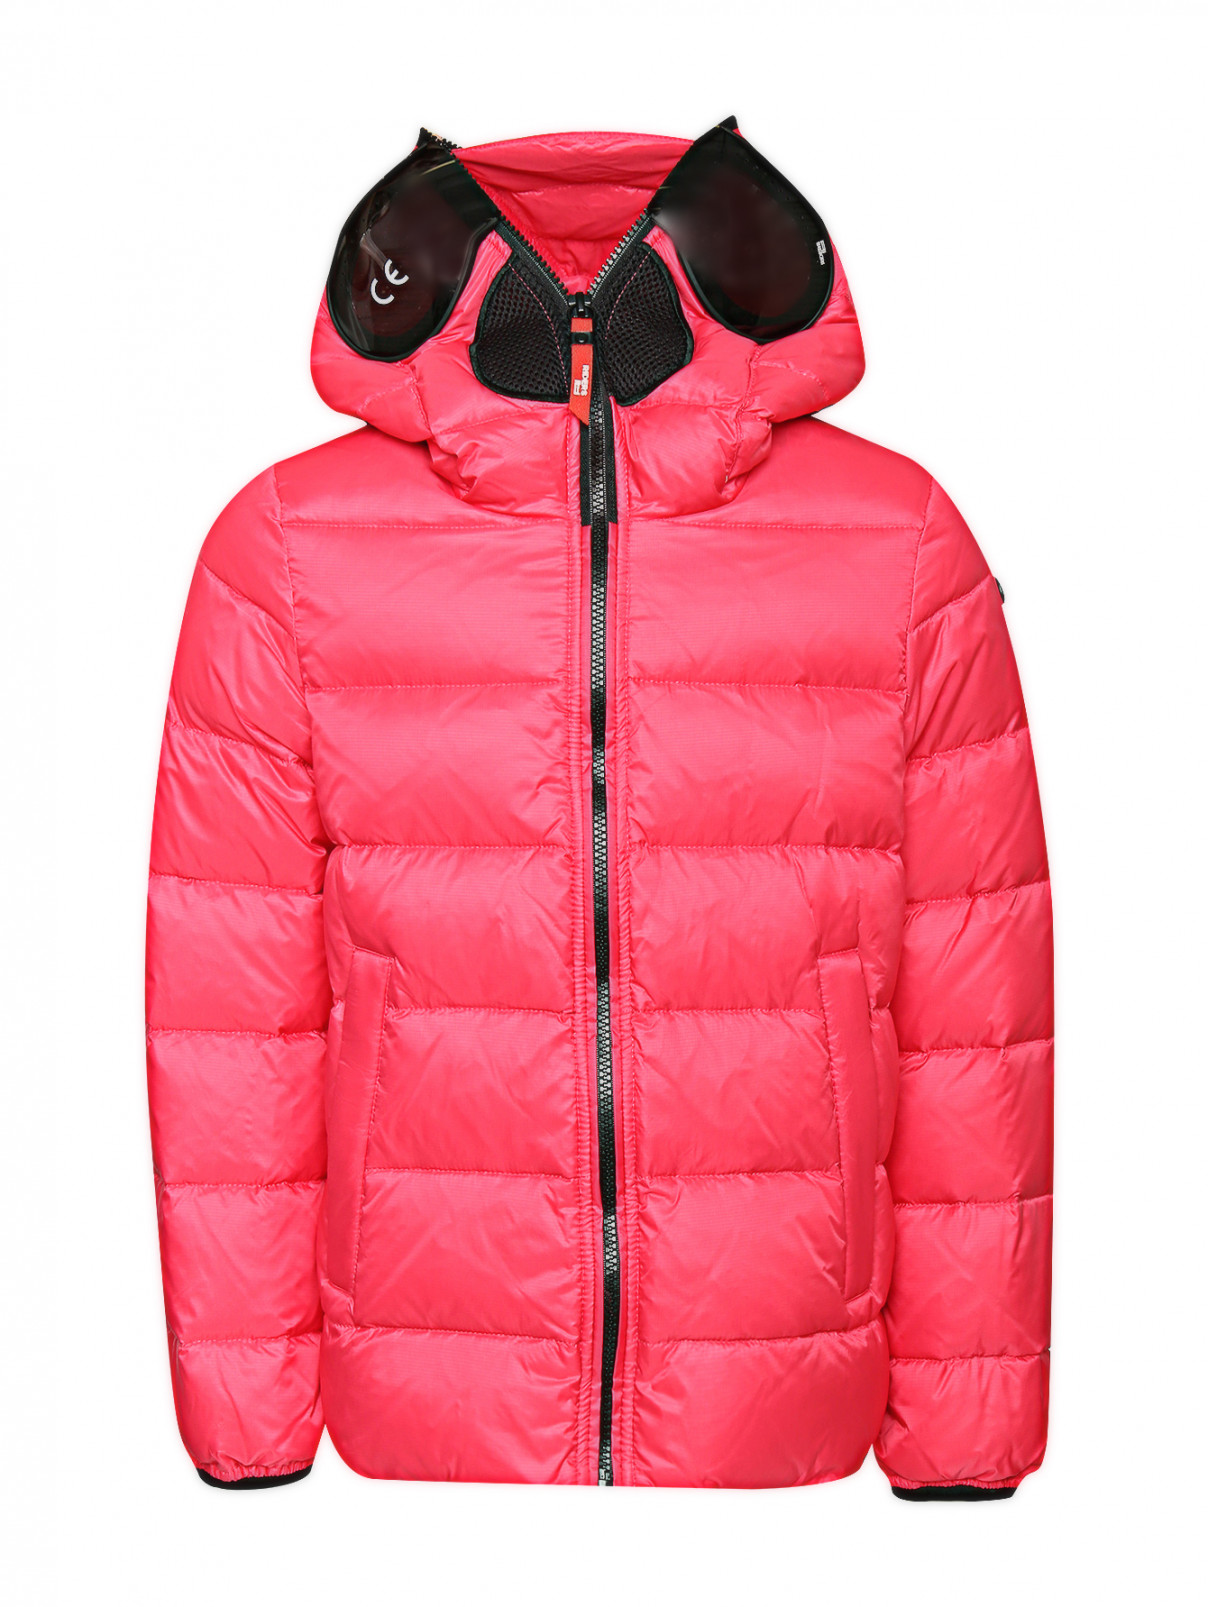 Куртка с капюшоном-шлемом Ai Riders  –  Общий вид  – Цвет:  Розовый